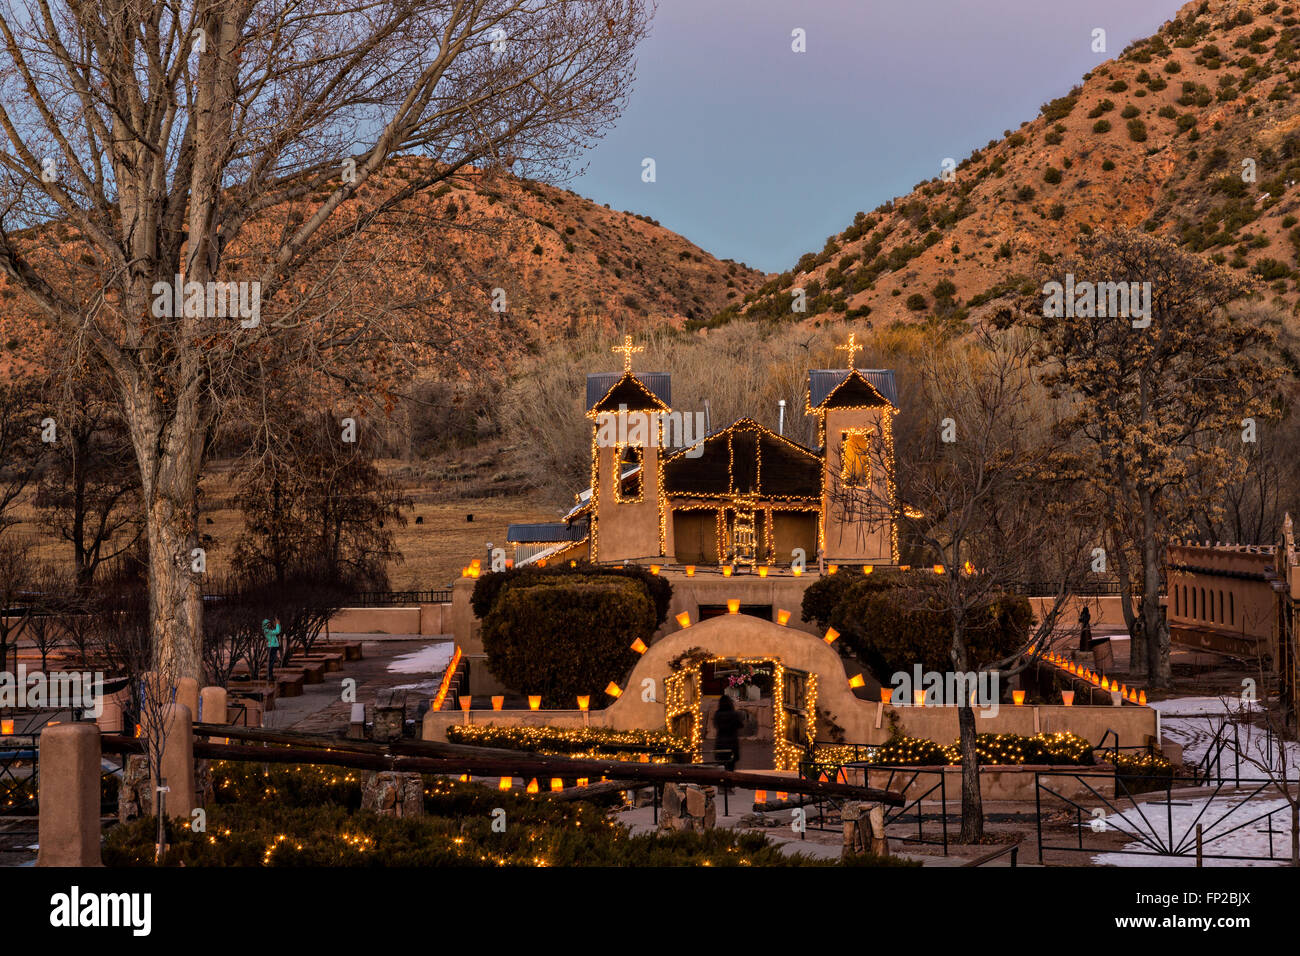 El Santuario de Chimayó Historic Site illuminée par des centaines de petites lanternes en papier appelé luminaria pour célébrer les fêtes de fin Décembre 13, 2015 dans Jemez Springs, New Mexico. Chaque année, 30 000 personnes des pèlerinages au sanctuaire. Banque D'Images